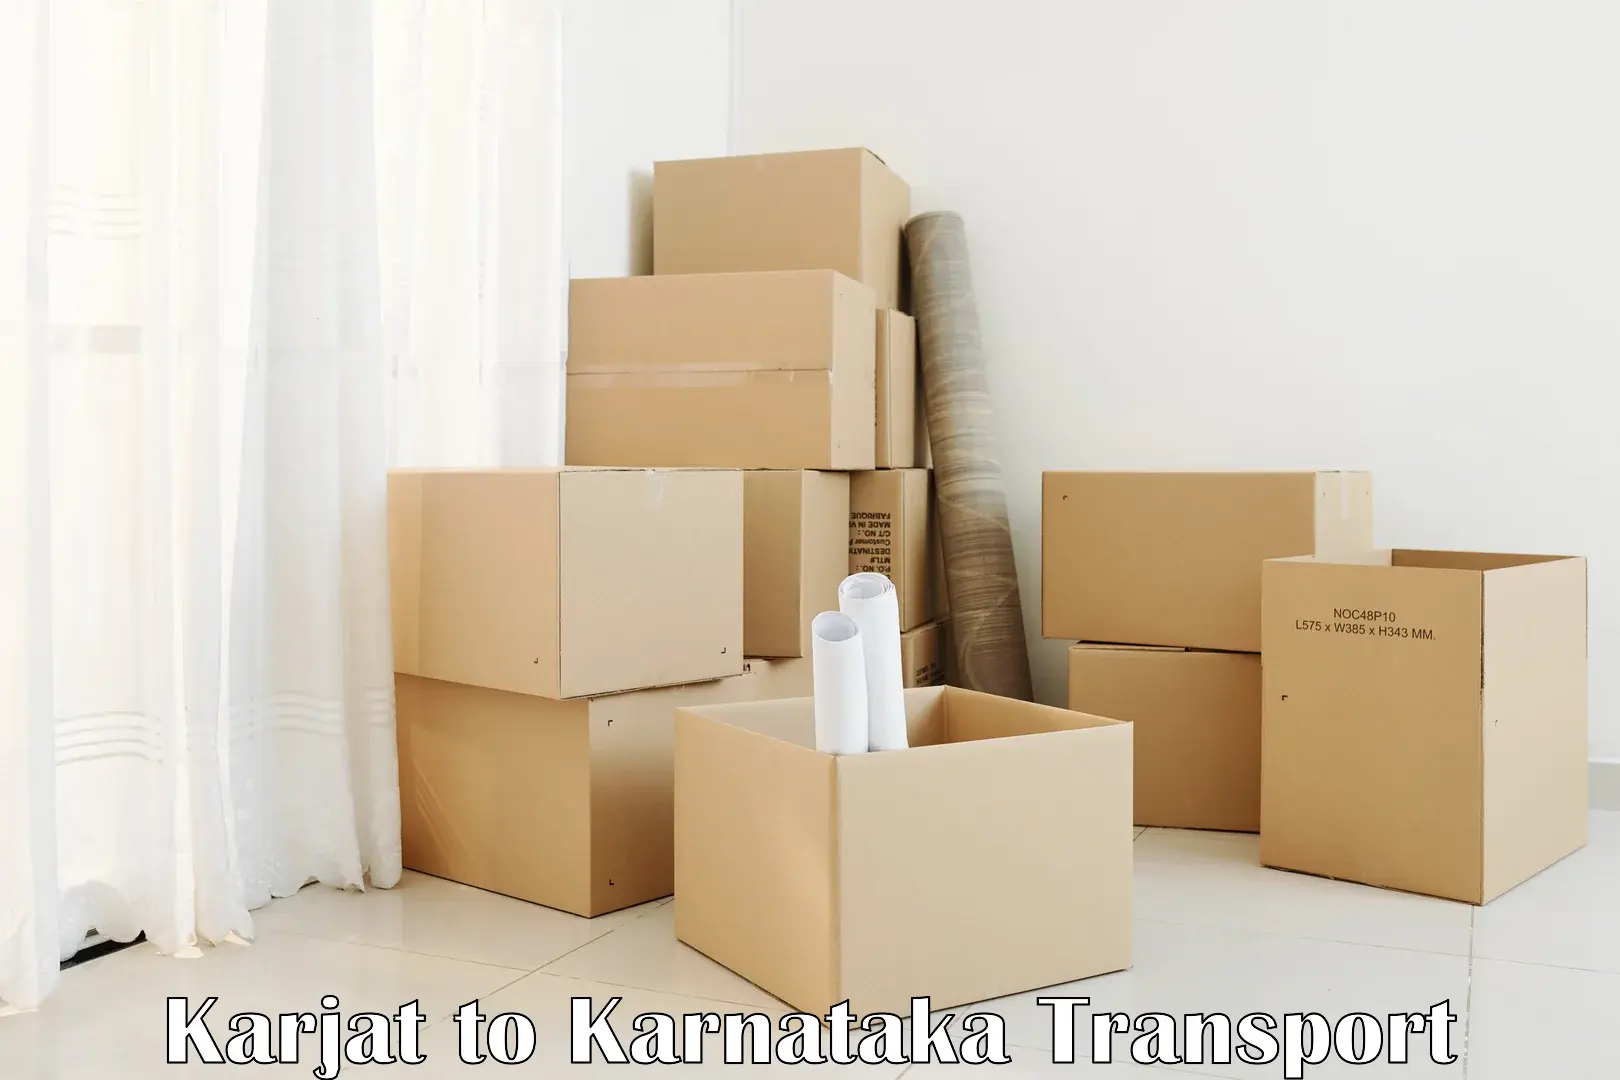 Transport services Karjat to Karnataka